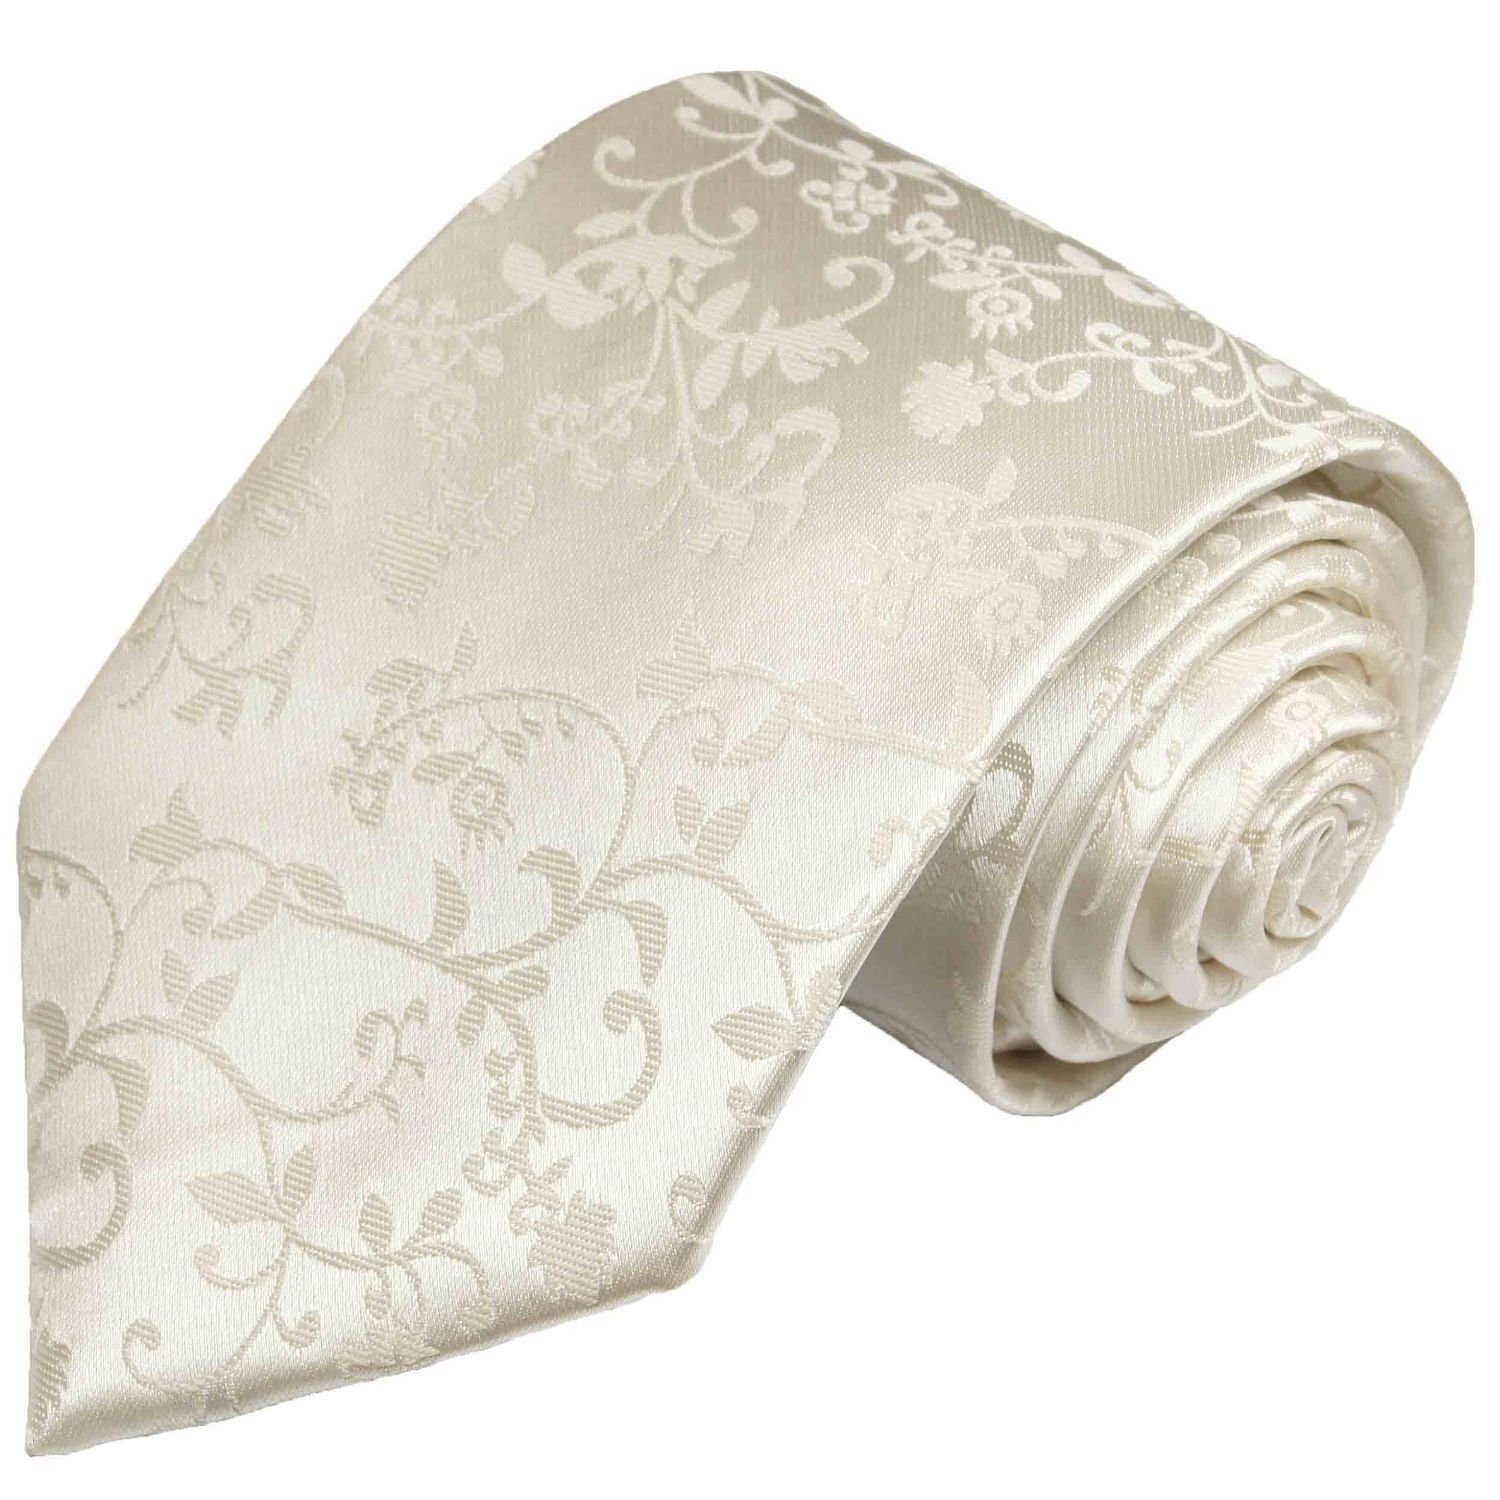 Paul Malone Krawatte Herren Hochzeitskrawatte floral 100% Seide Bräutigam Hochzeit Schlips Schmal (6cm), ivory 930 | Breite Krawatten